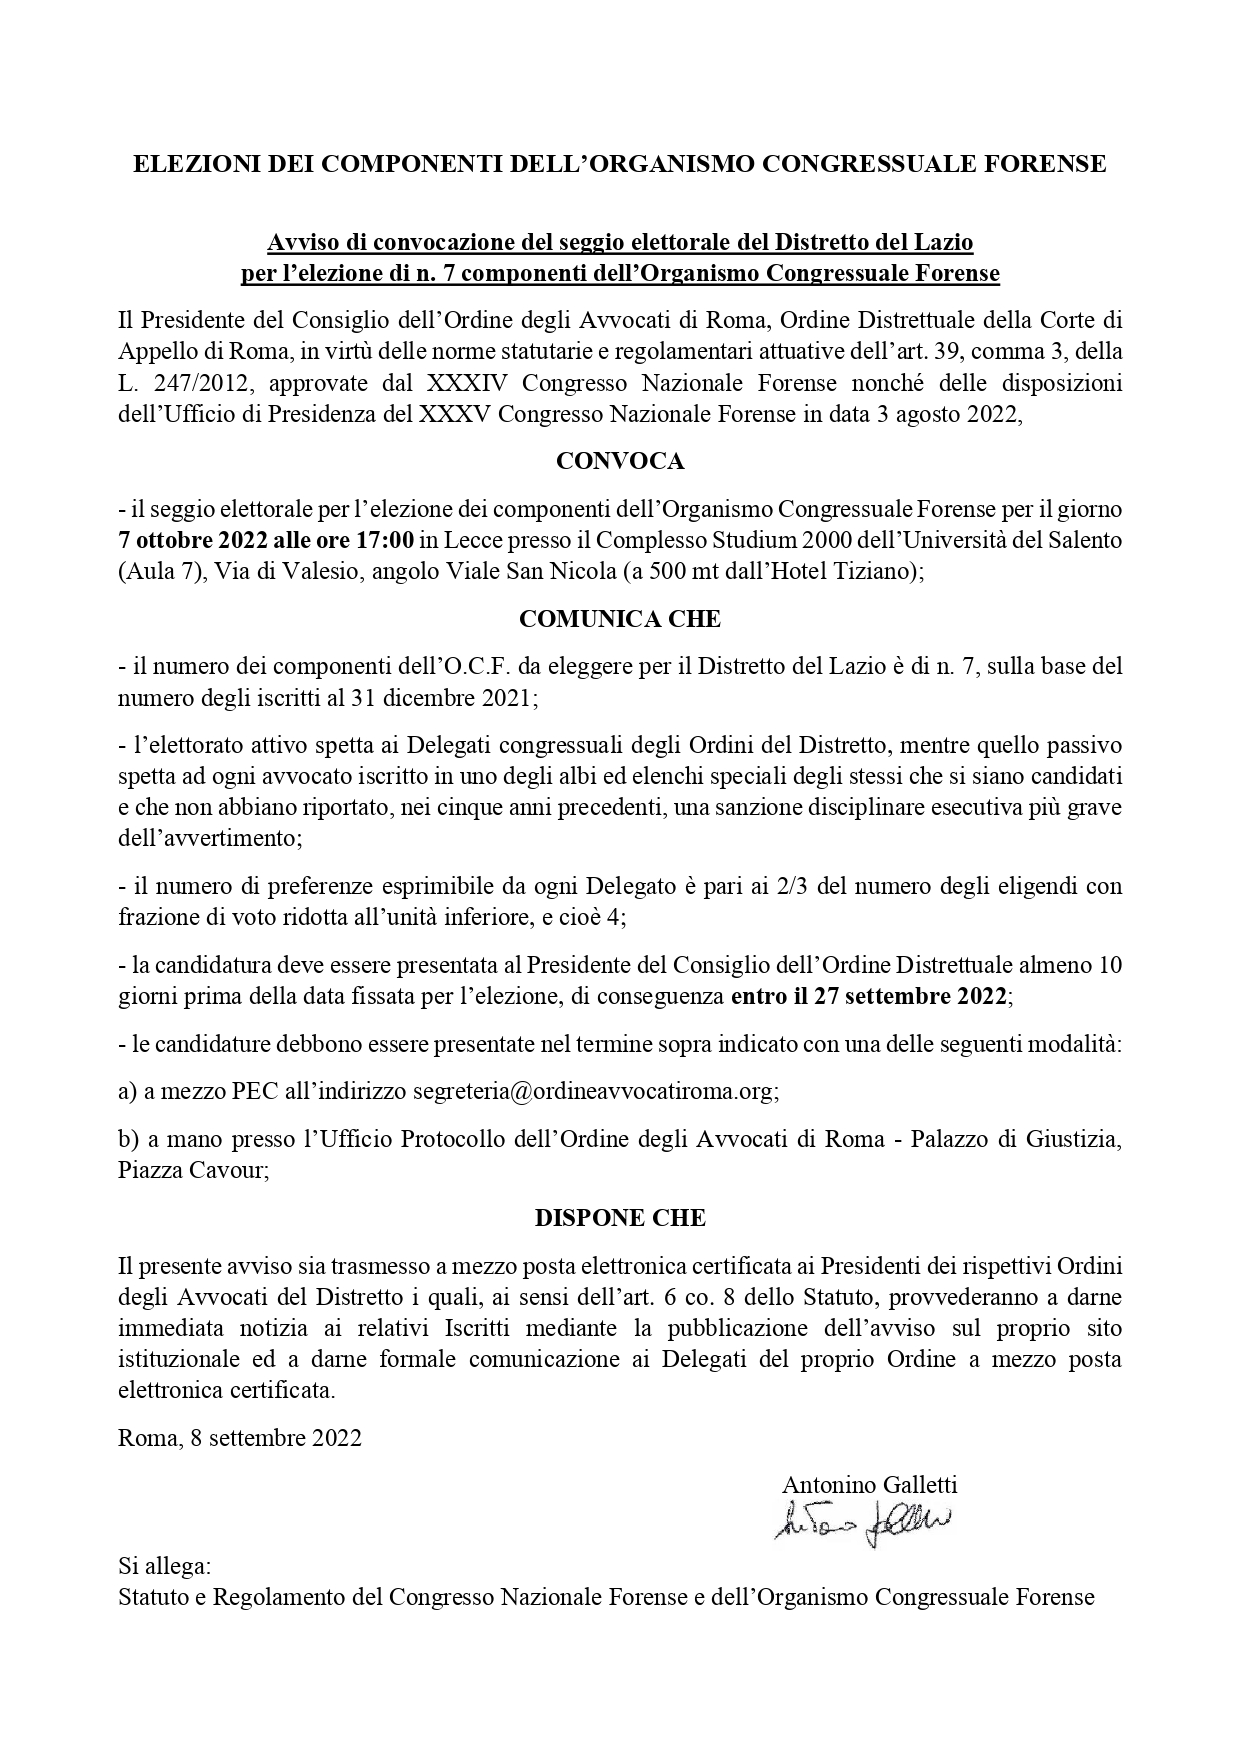 Avviso di convocazione del seggio elettorale del Distretto del Lazio per l’elezione di n. 7 componenti dell’Organismo Congressuale Forense